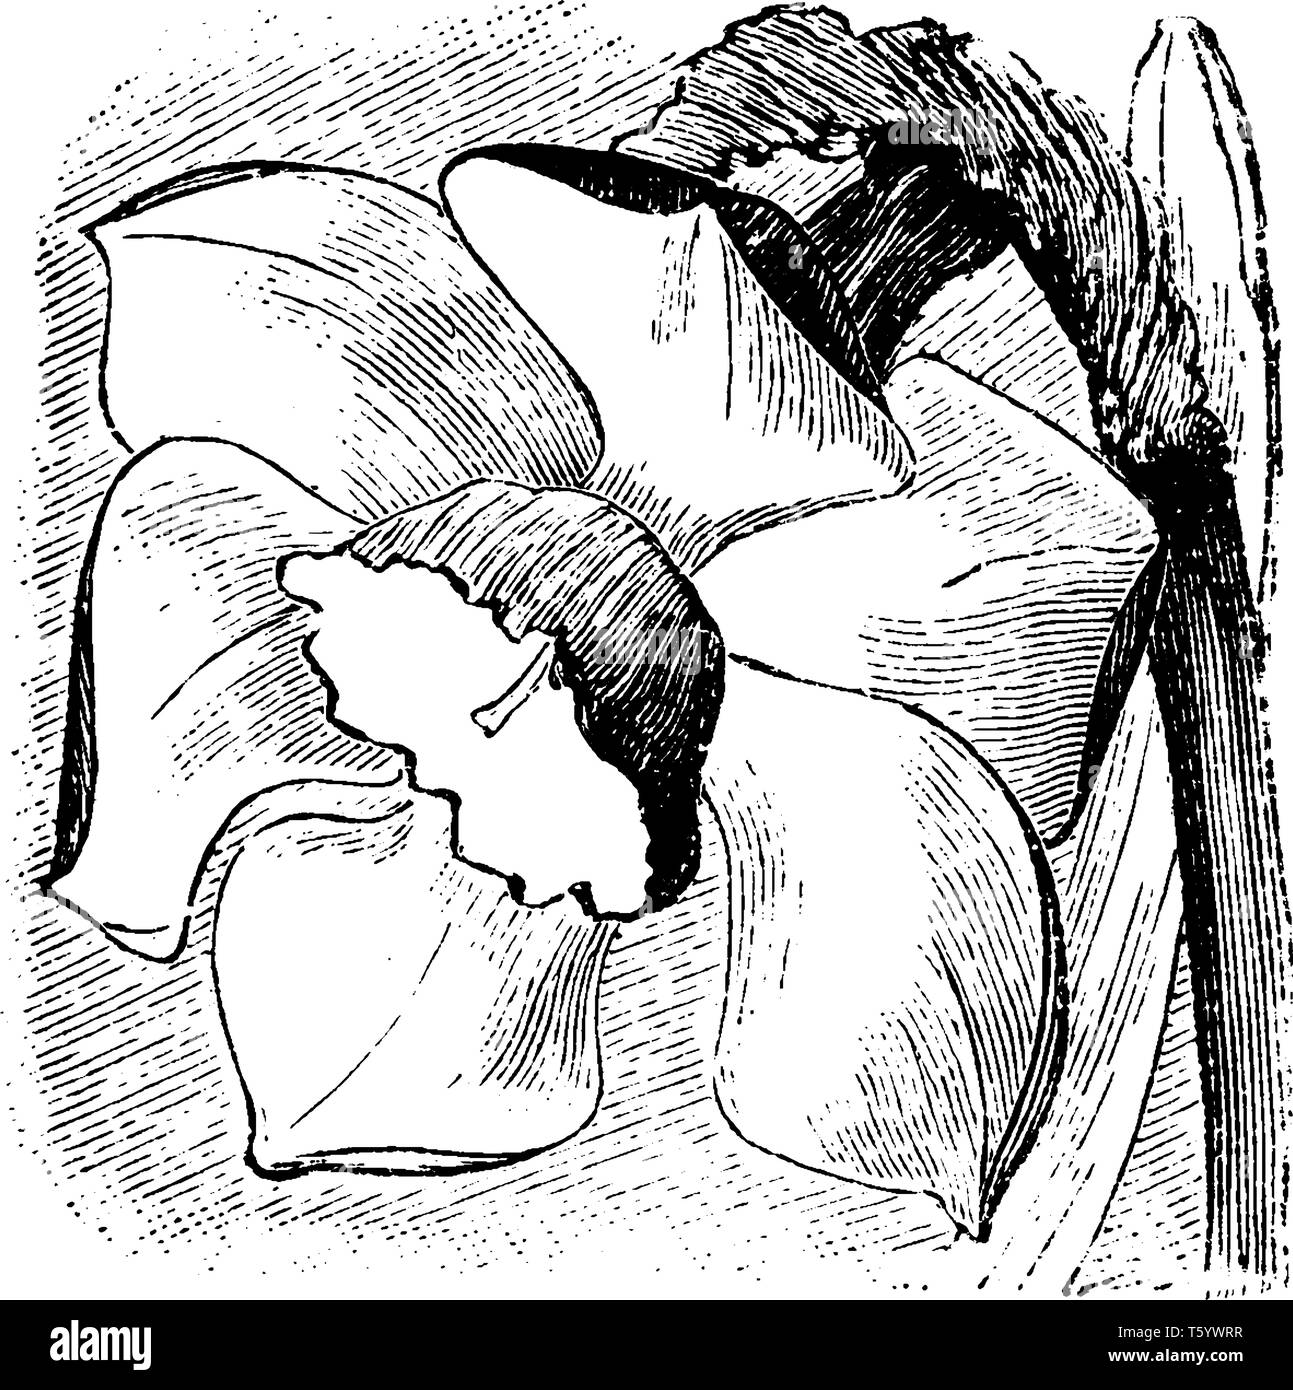 Una circolare stelo sagomato con un fiore di narciso vegetale, vintage disegno della linea di incisione o illustrazione. Illustrazione Vettoriale